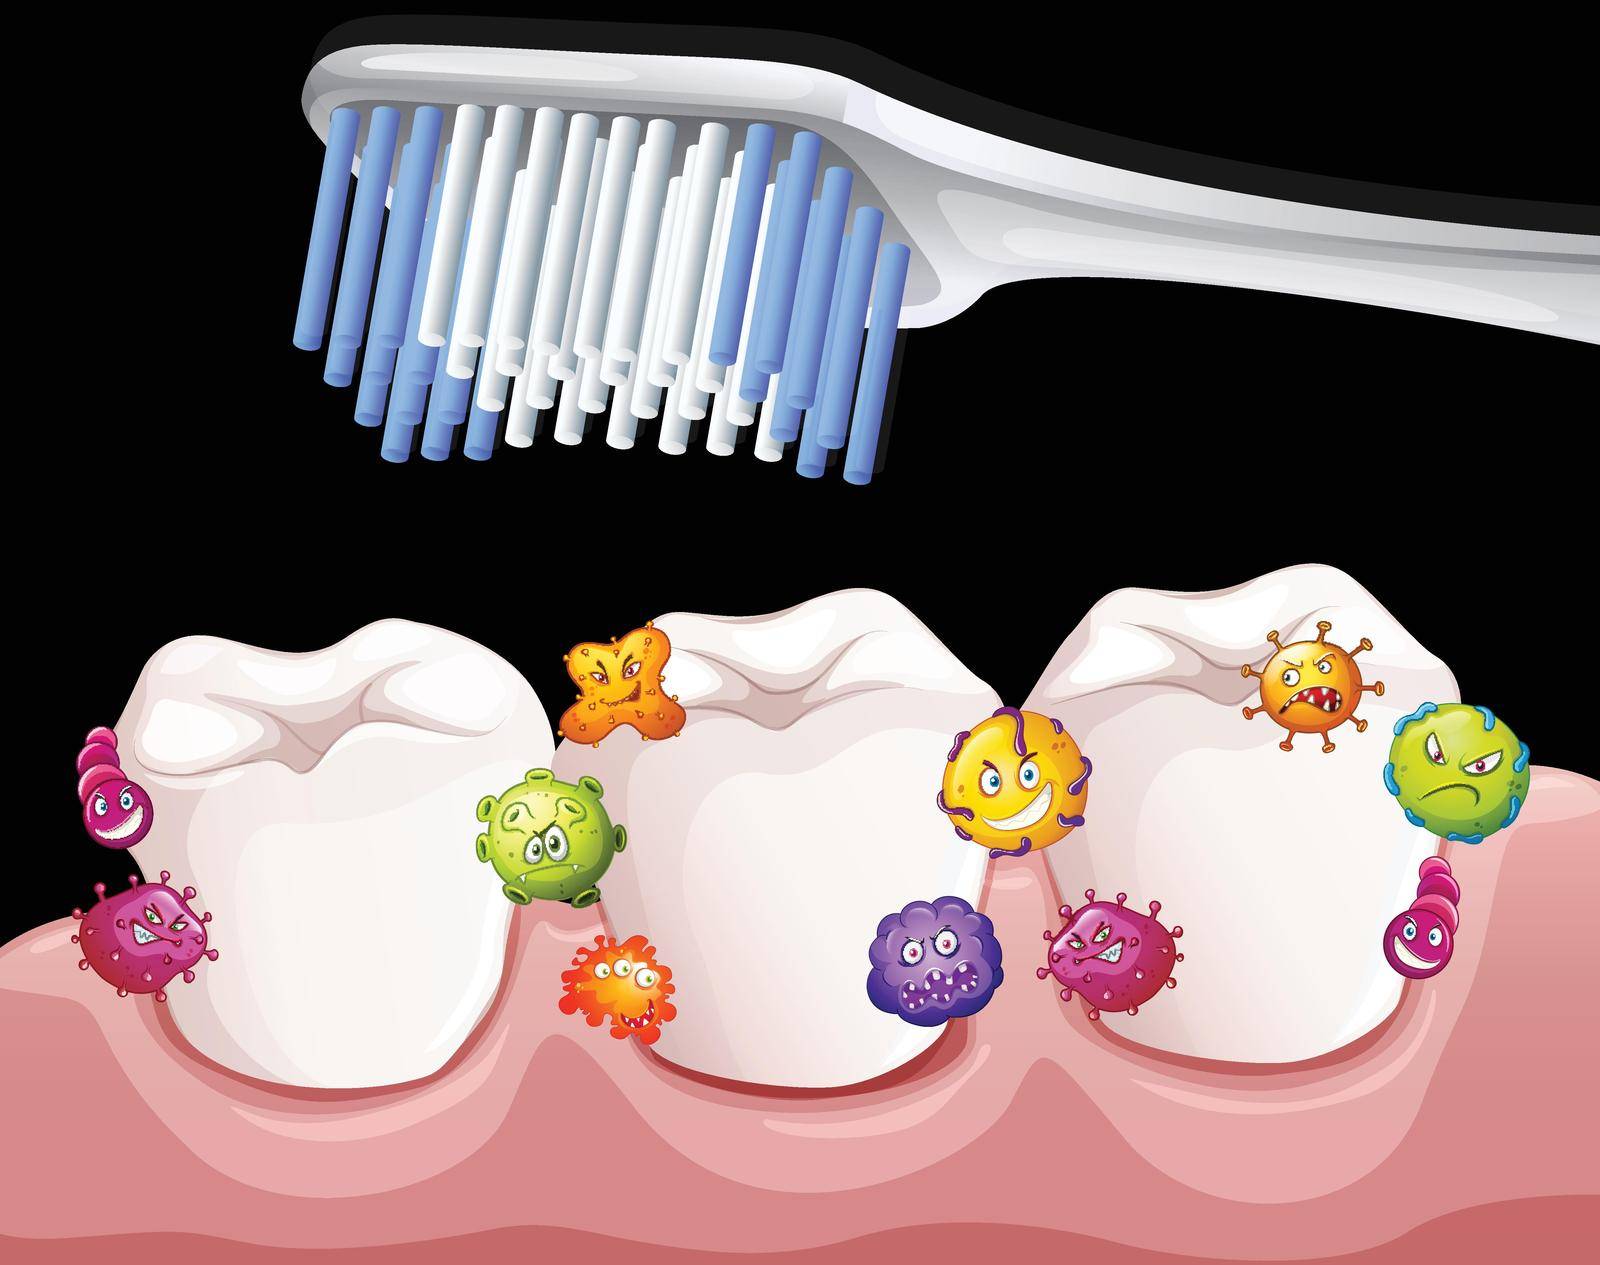 Bacteria between teeth when brushing by iimages